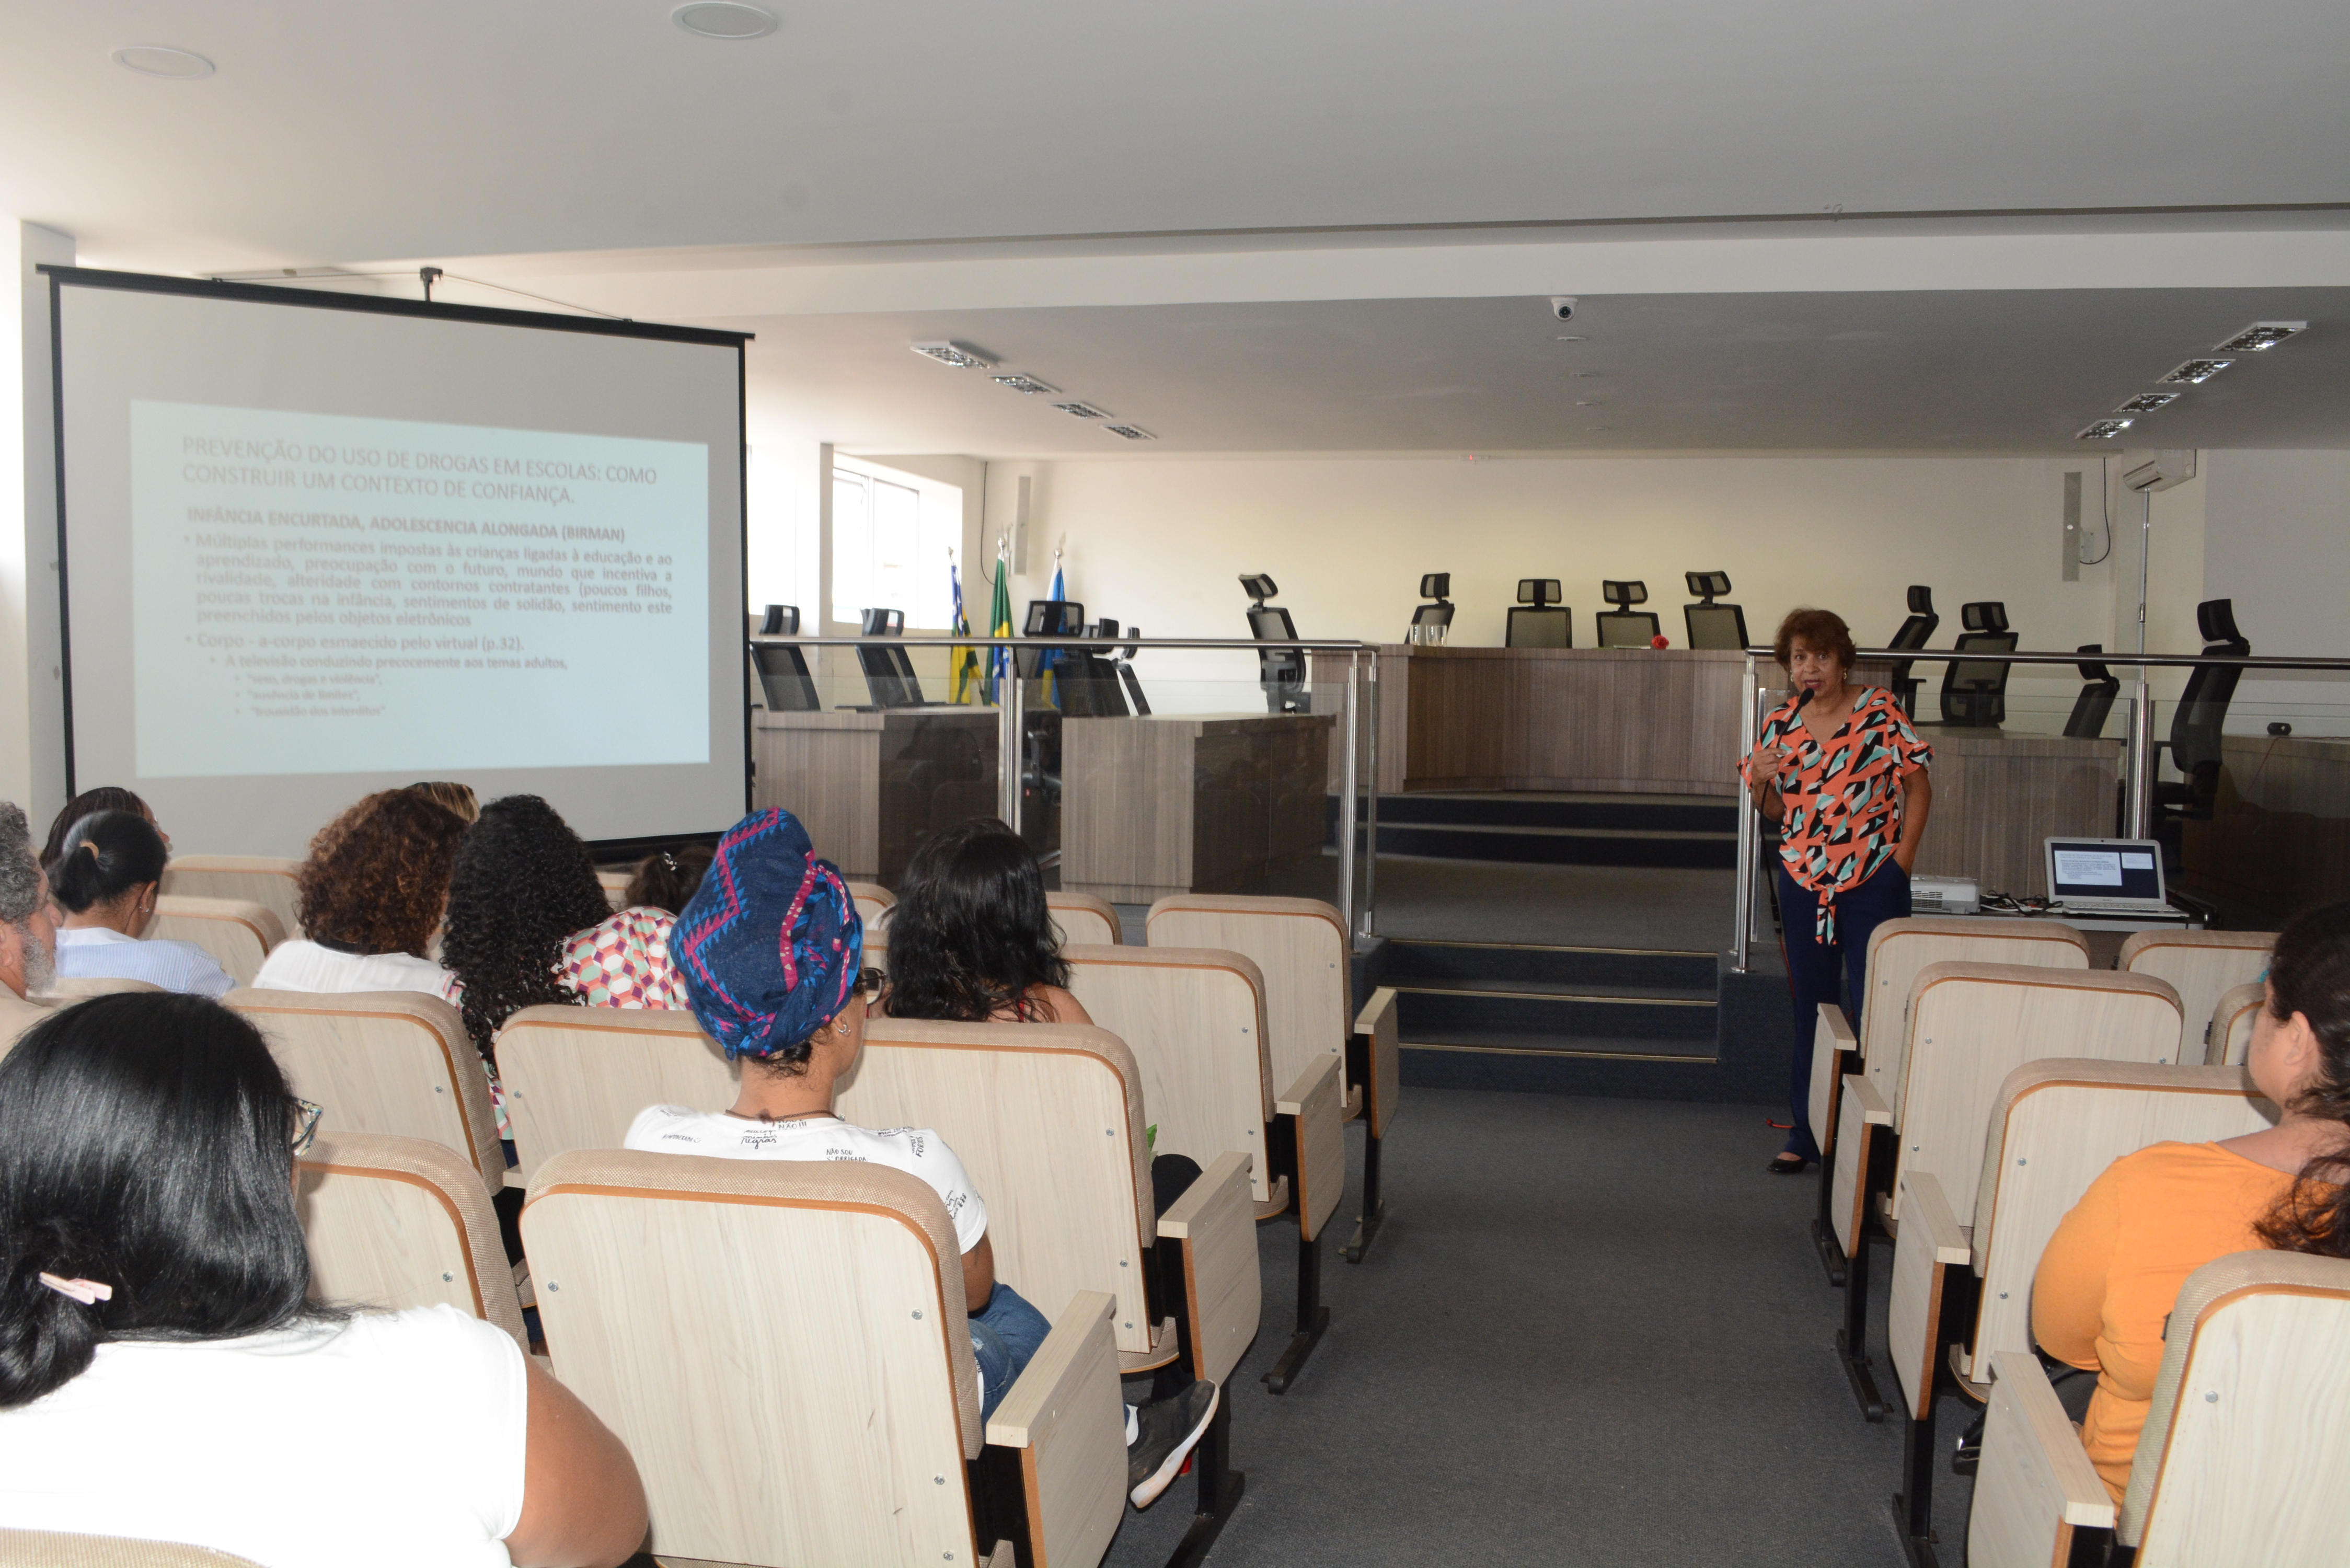 Conferência “Prevenção do uso de drogas em escolas: como construir um contexto de confiança”, com a Profa. Dra. Maria Lizabete Pinheiro